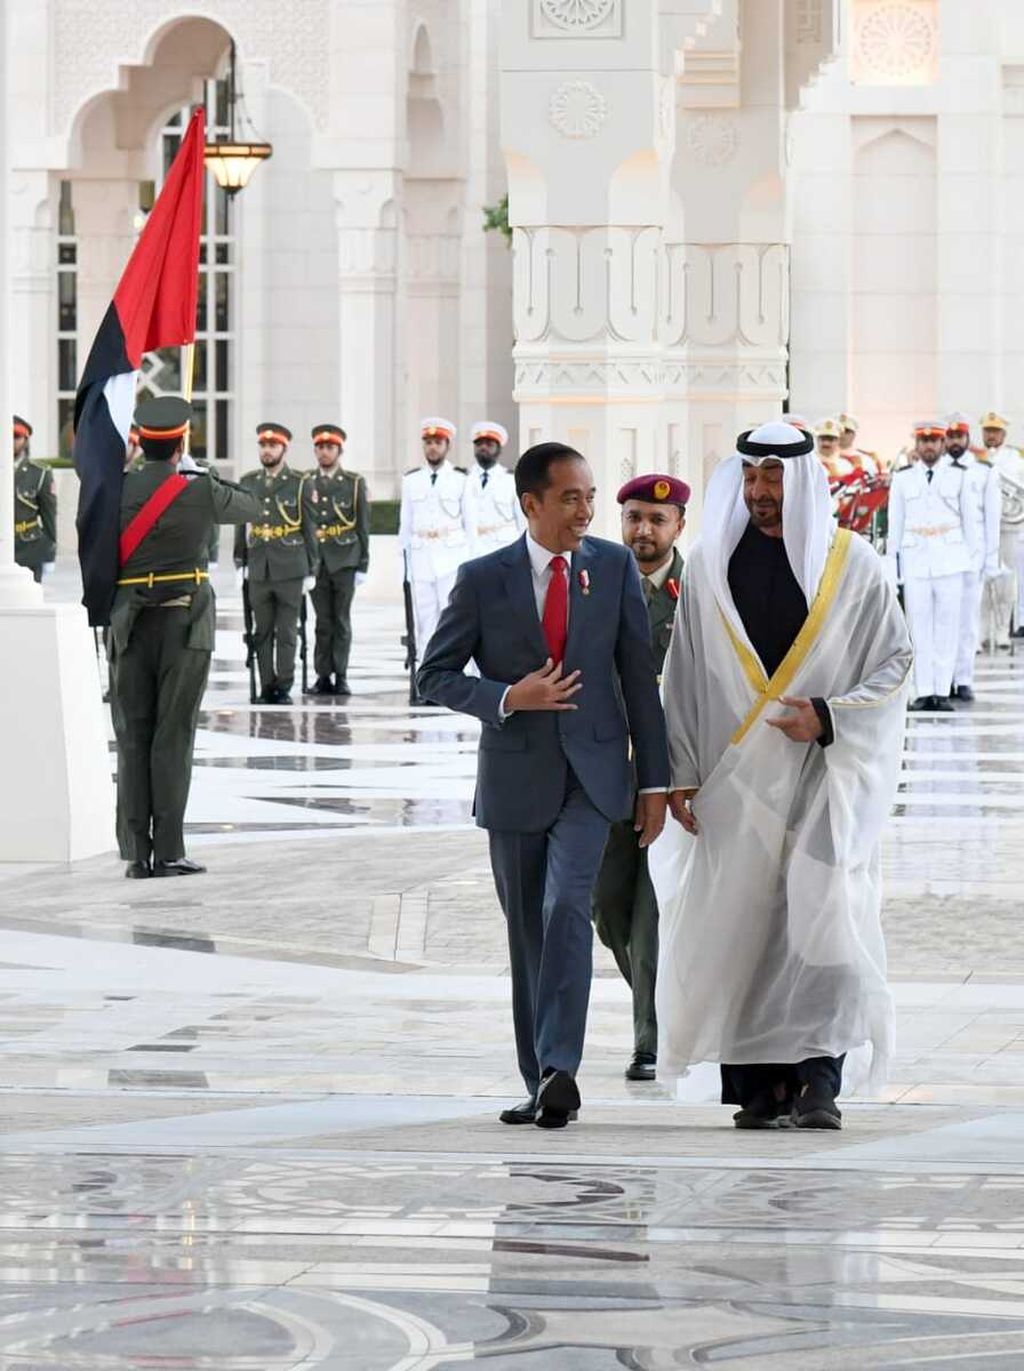 Presiden Joko Widodo melakukan kunjungan kenegaraan ke Putra Mahkota Abu Dhabi Sheikh Mohamed bin Zayyed al-Nahyan di Istana Kepresidenan Qasr al-Watan, Abu Dhabi, UEA, Minggu (12/1/2020) petang hingga malam waktu setempat. Selain kerja sama investasi dan bidang lain, keduanya sempat menyinggung situasi terkini di kawasan Timur Tengah.